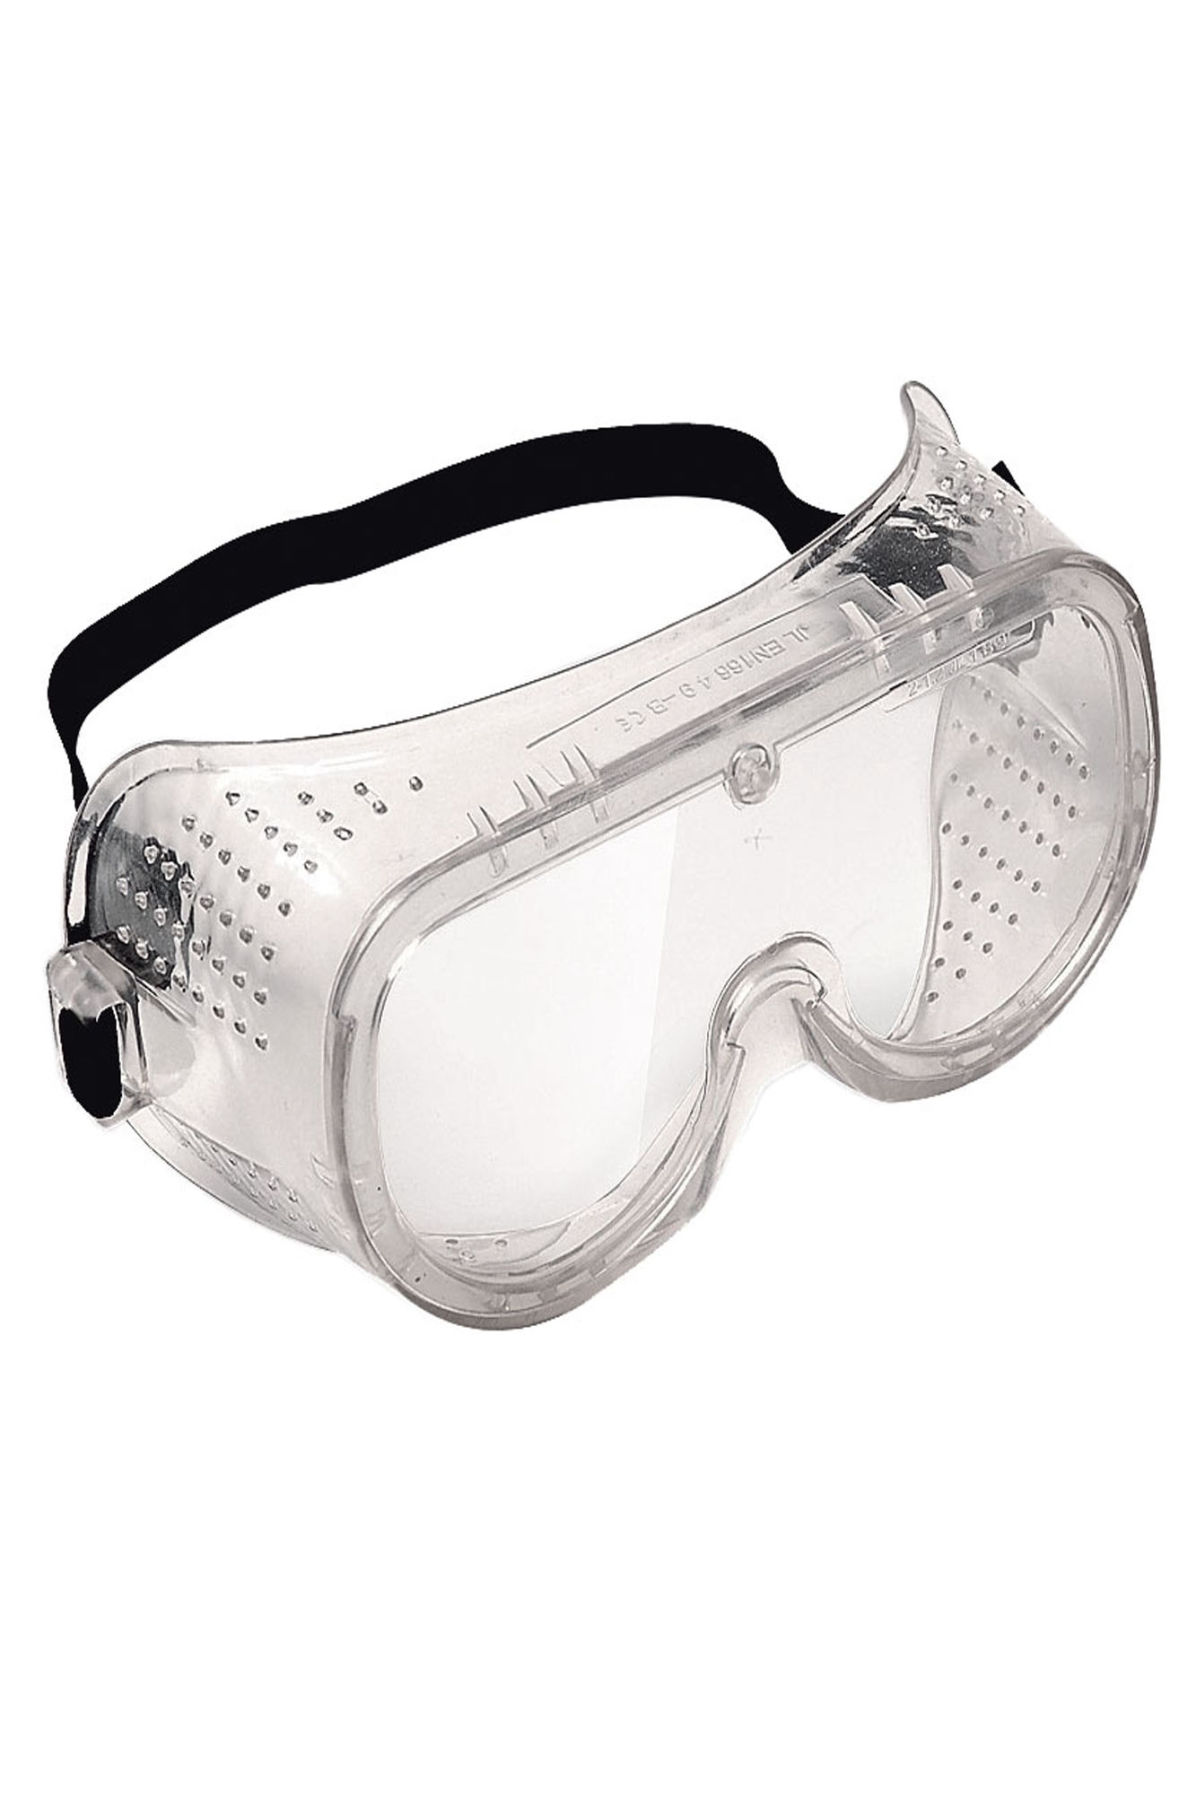 Защитные очки от пыли. Очки защитные Fit 12207. Очки защитные Fit 12218 черный. Защитные очки amigo 74220. Очки защитные с вентиляцией (12207).